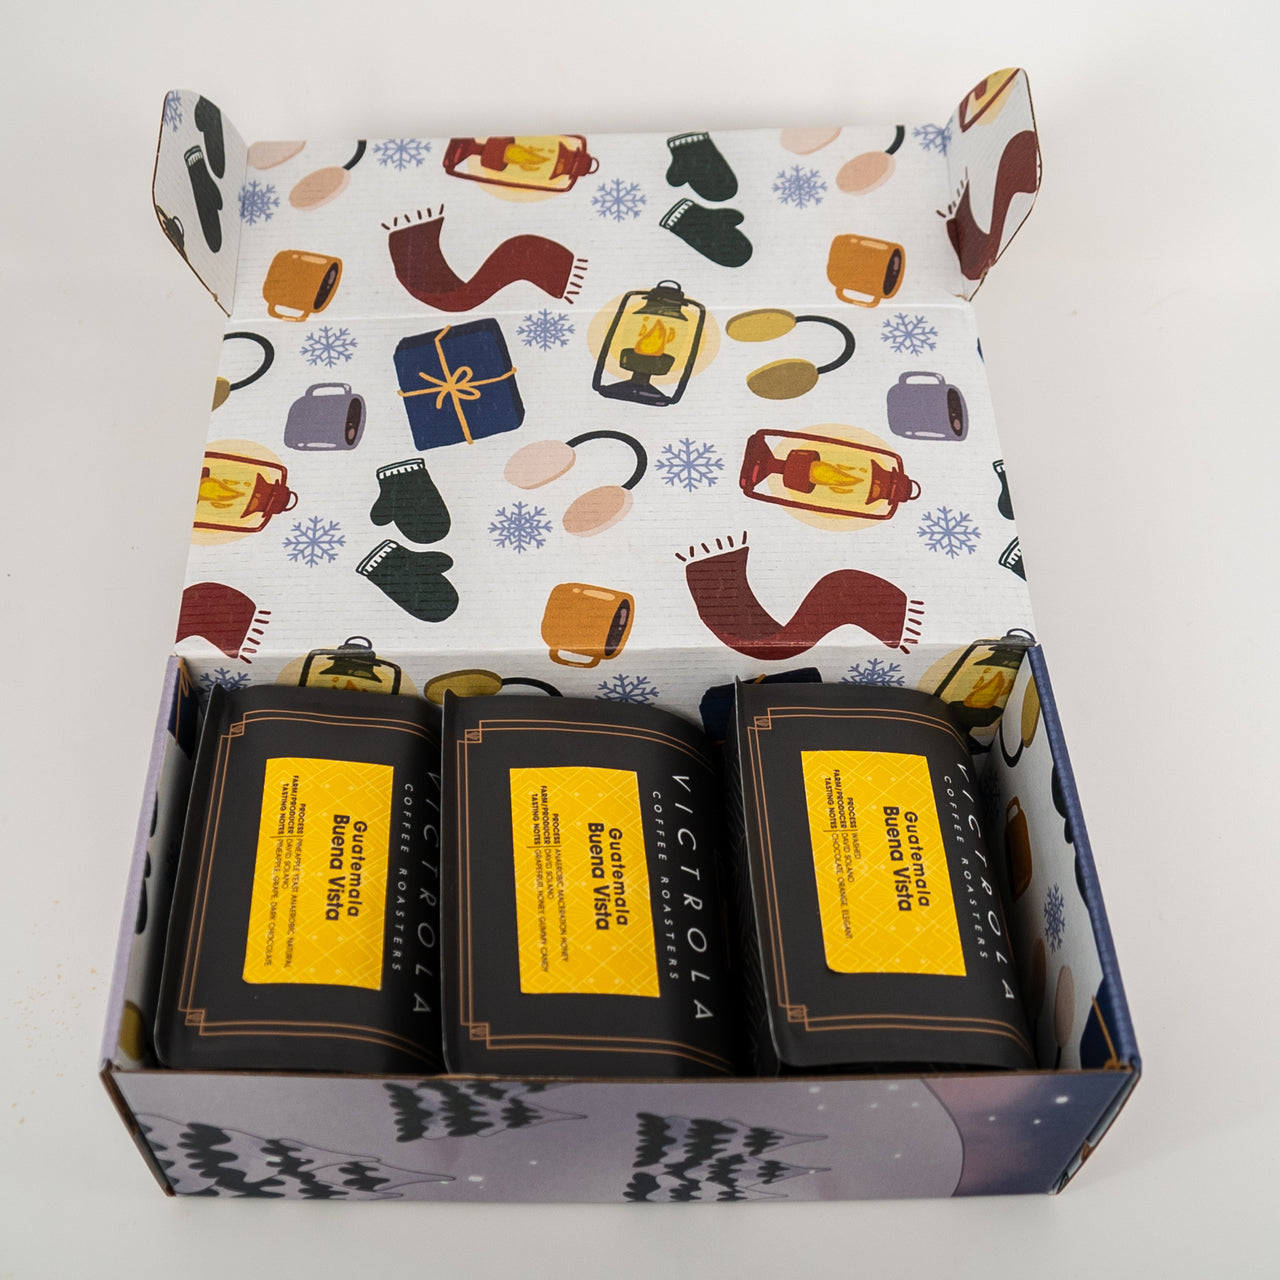 Victrola Holiday Gift Box Set